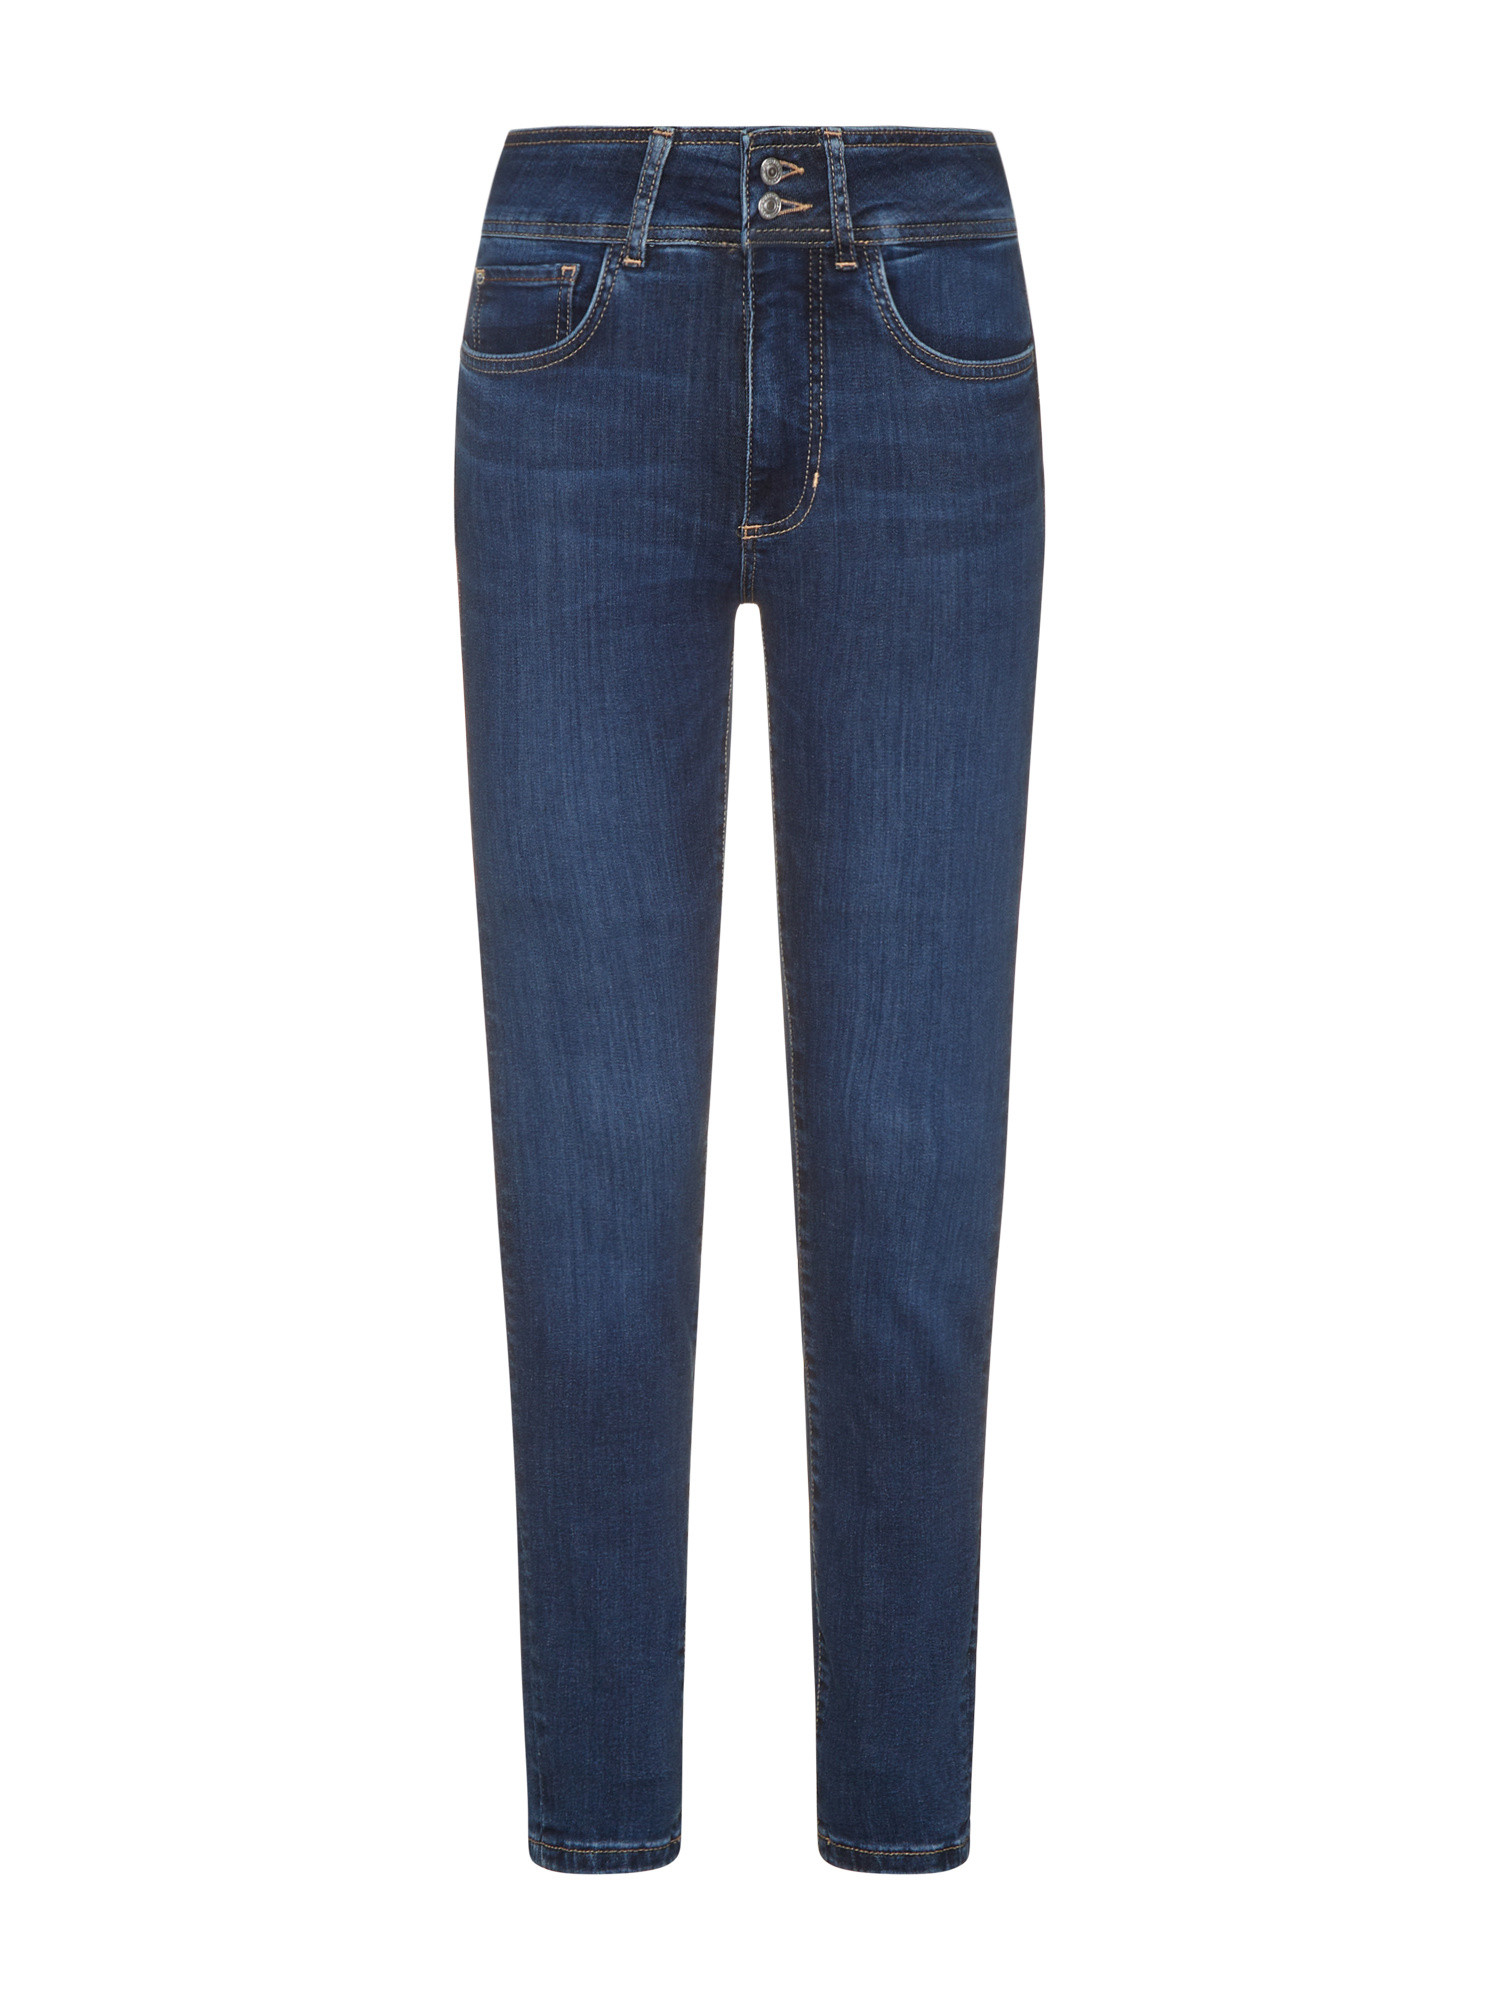 Guess - Five pocket skinny jeans, Blue, large image number 0